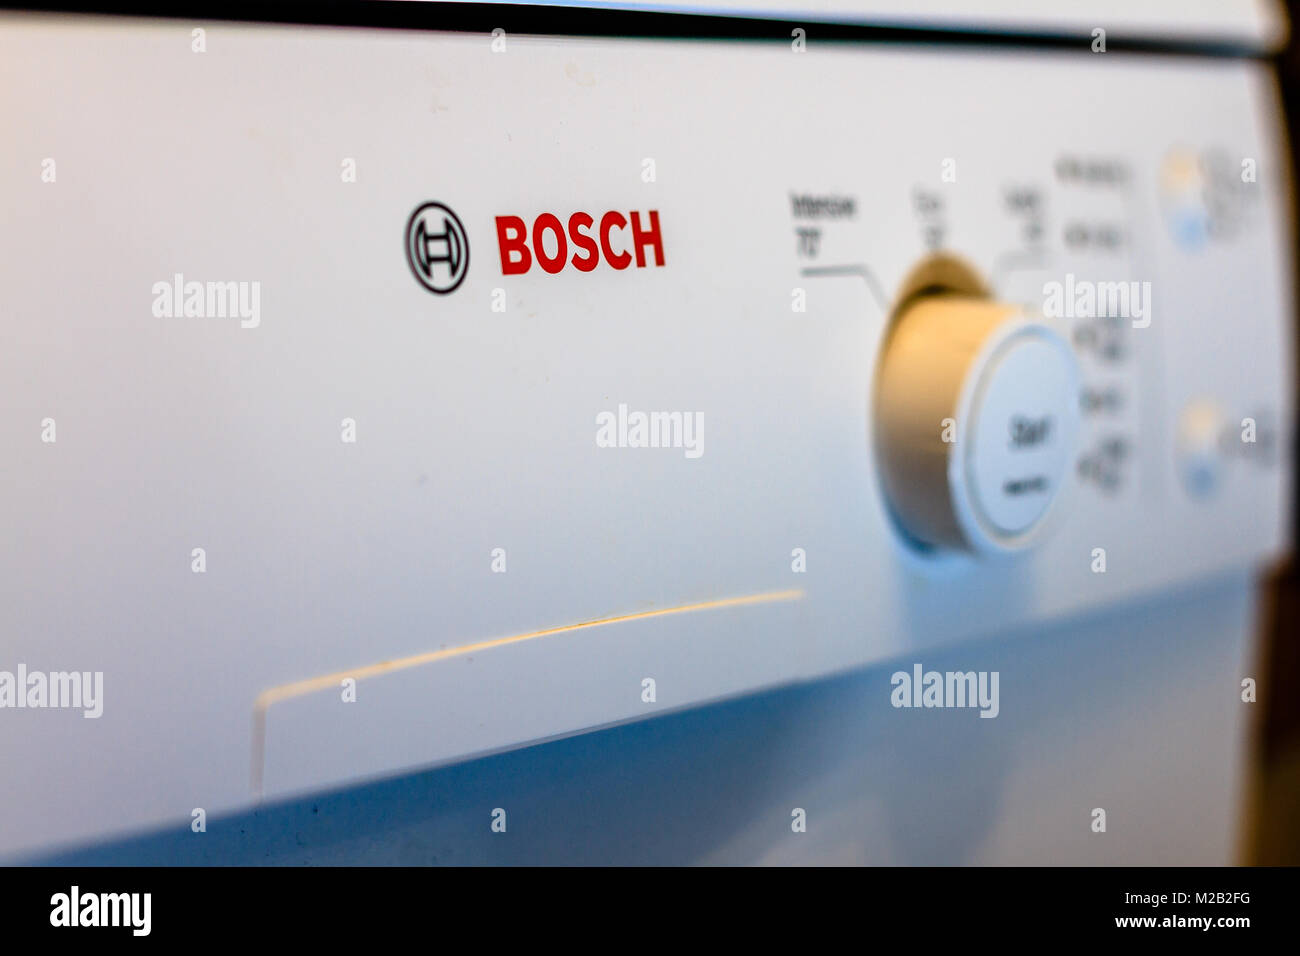 Cadrans avant sur un foyer domestique lave-vaisselle Bosch appareil. Février 2018. Banque D'Images